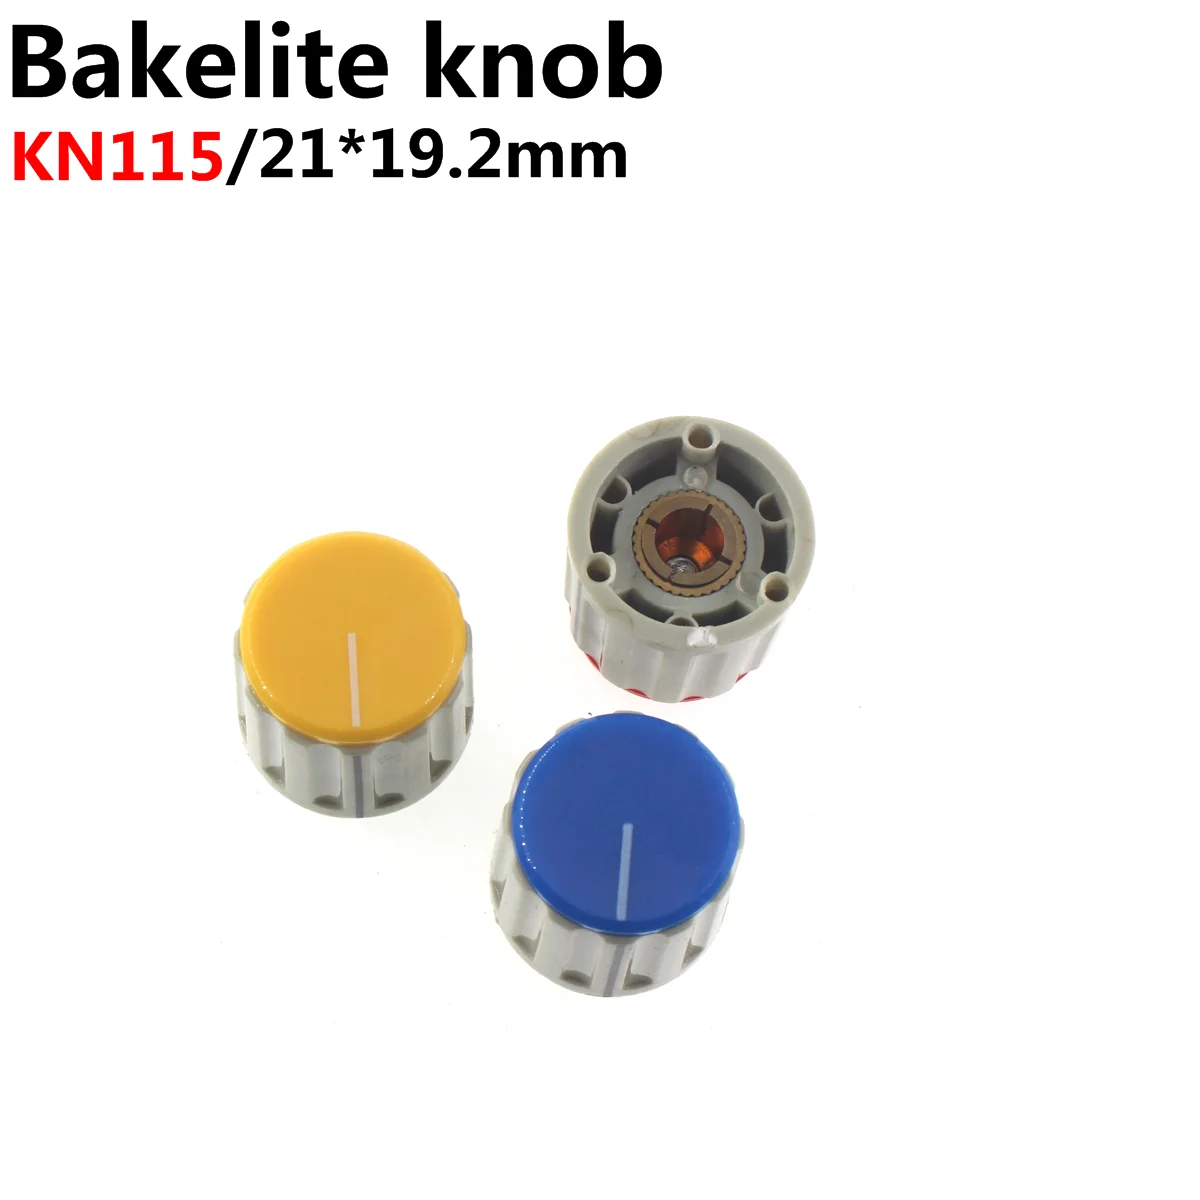 

5pcs 21mmX19mm inner diameter 6mm KN115 KN118 knob plastic adjustment knob potentiometer knob volume knob (copper)